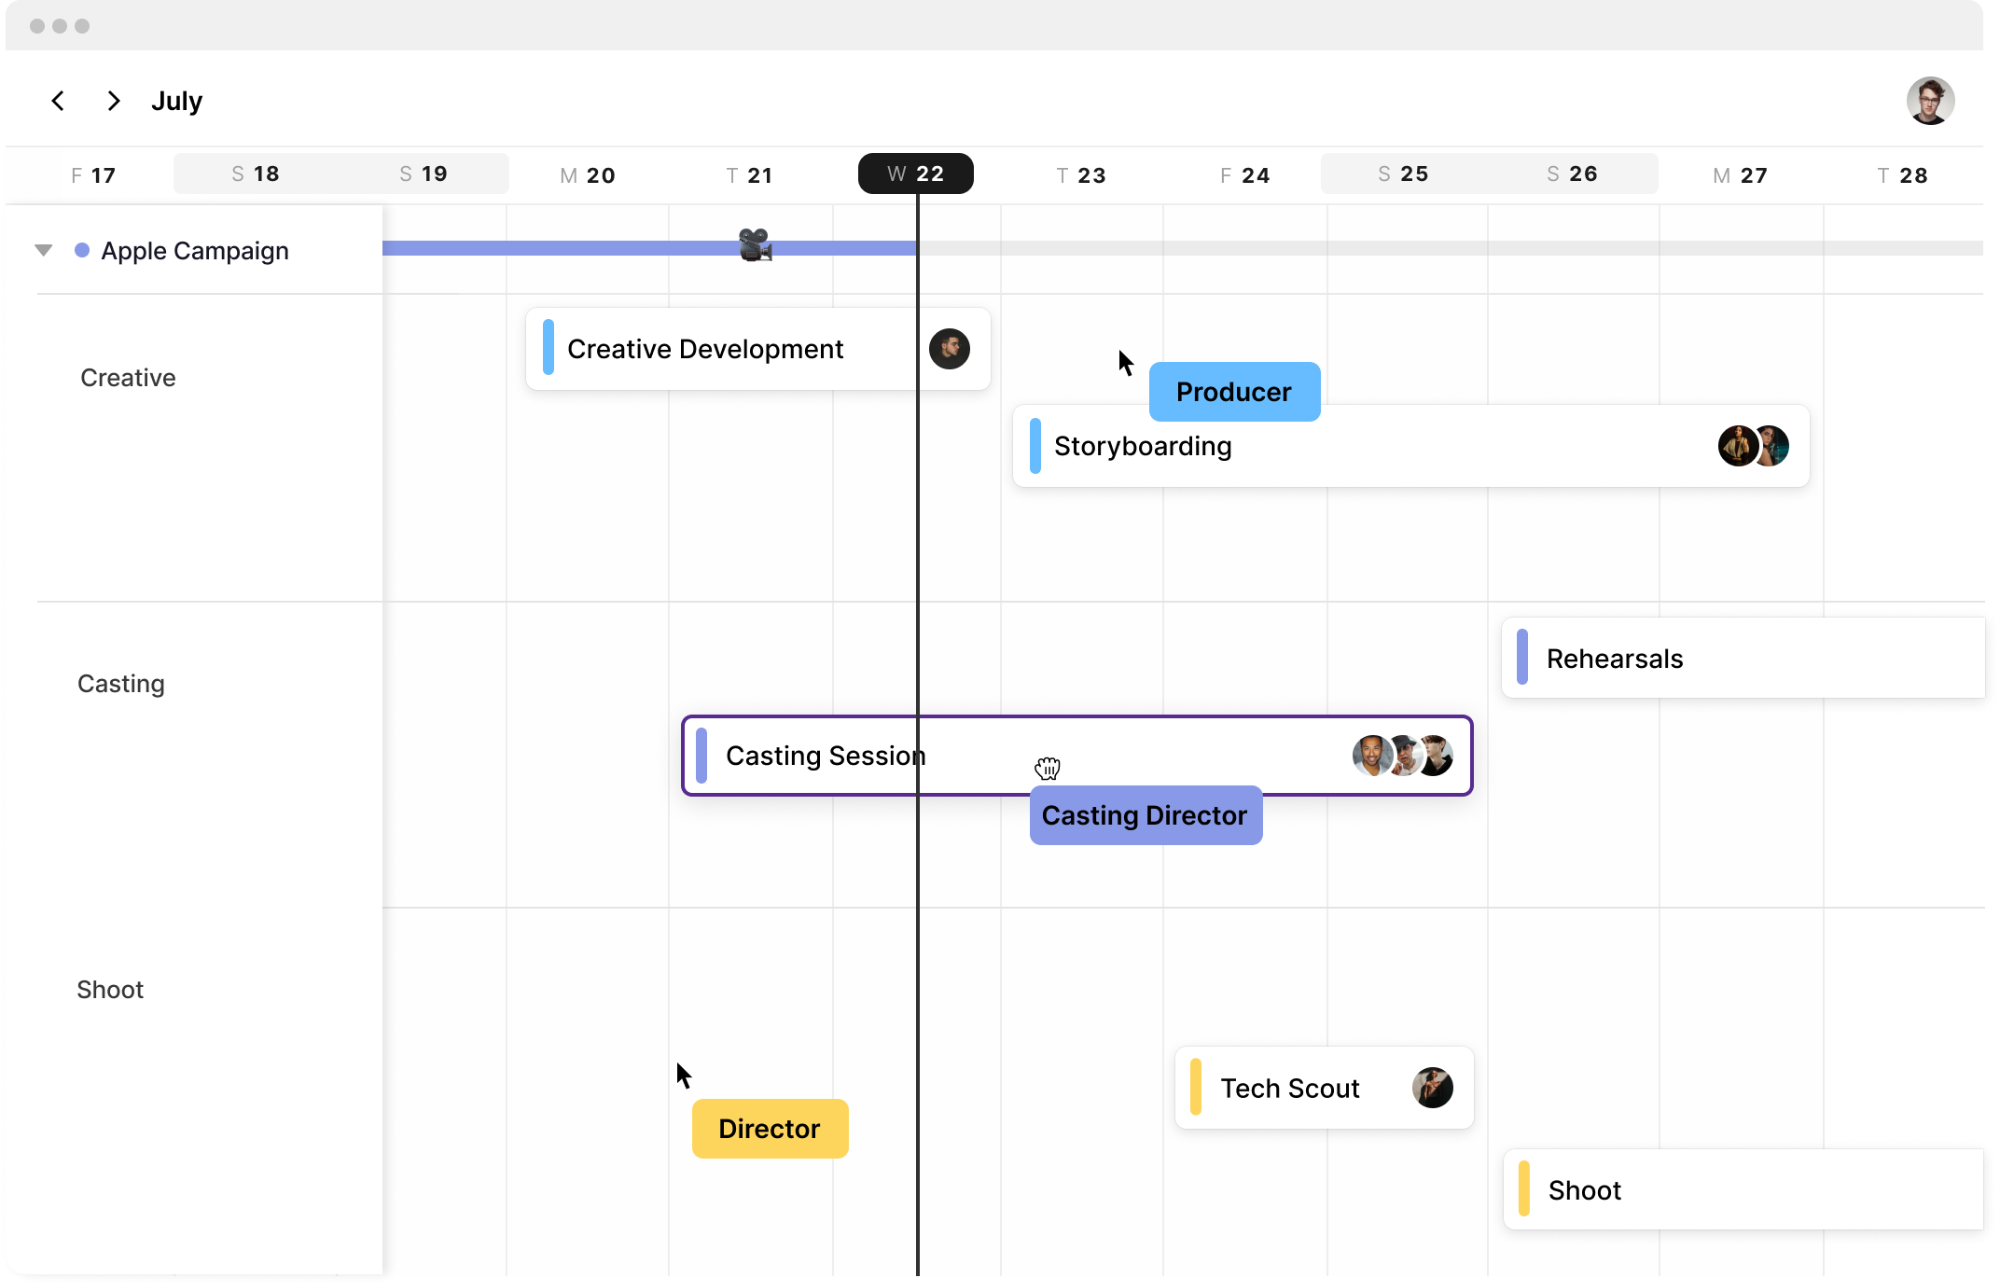 Screen shot of Assemble's calendar scheduling feature